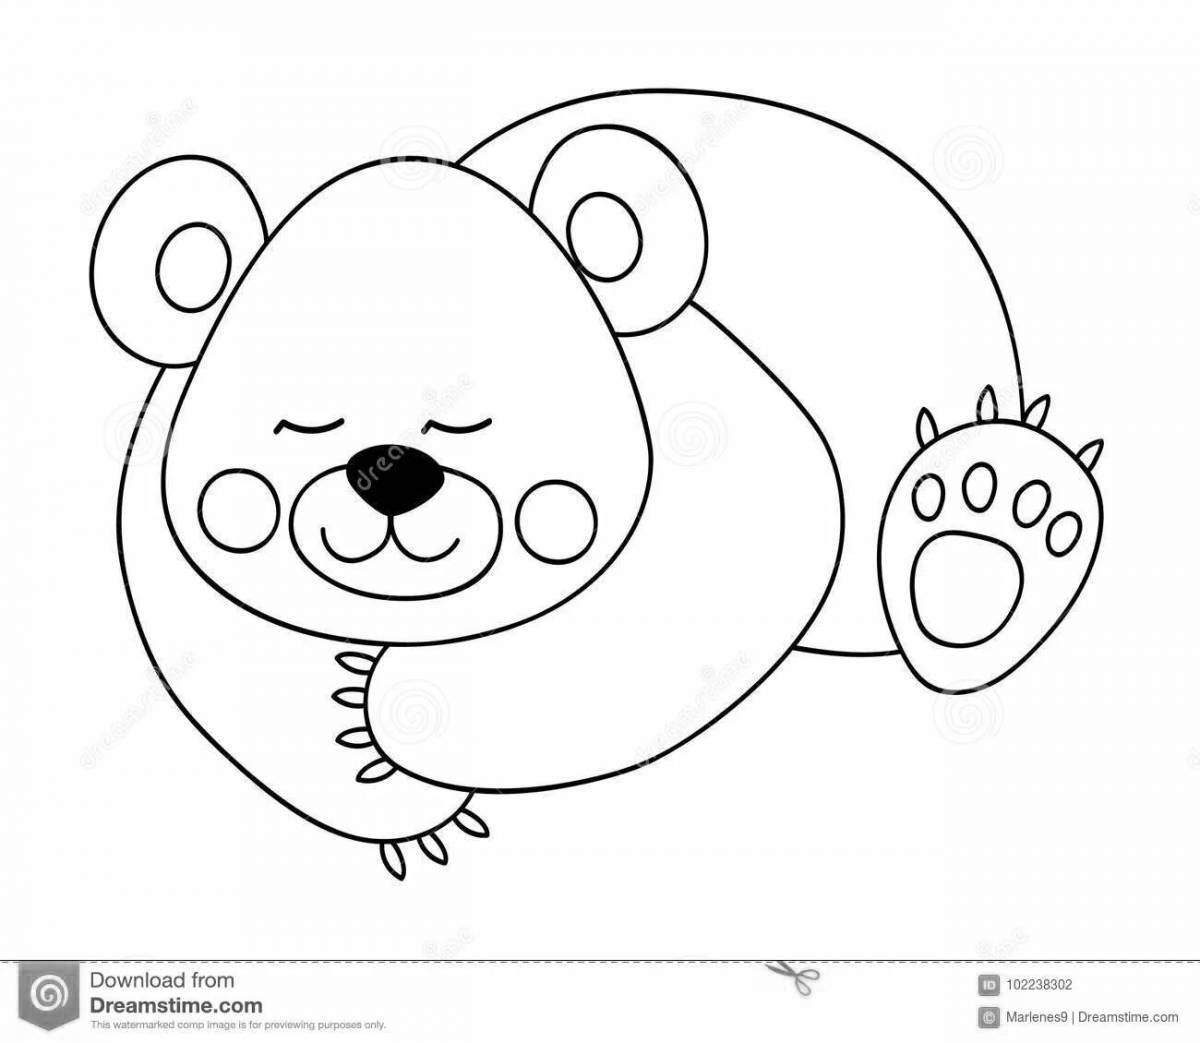 Берлога медведя рисунок